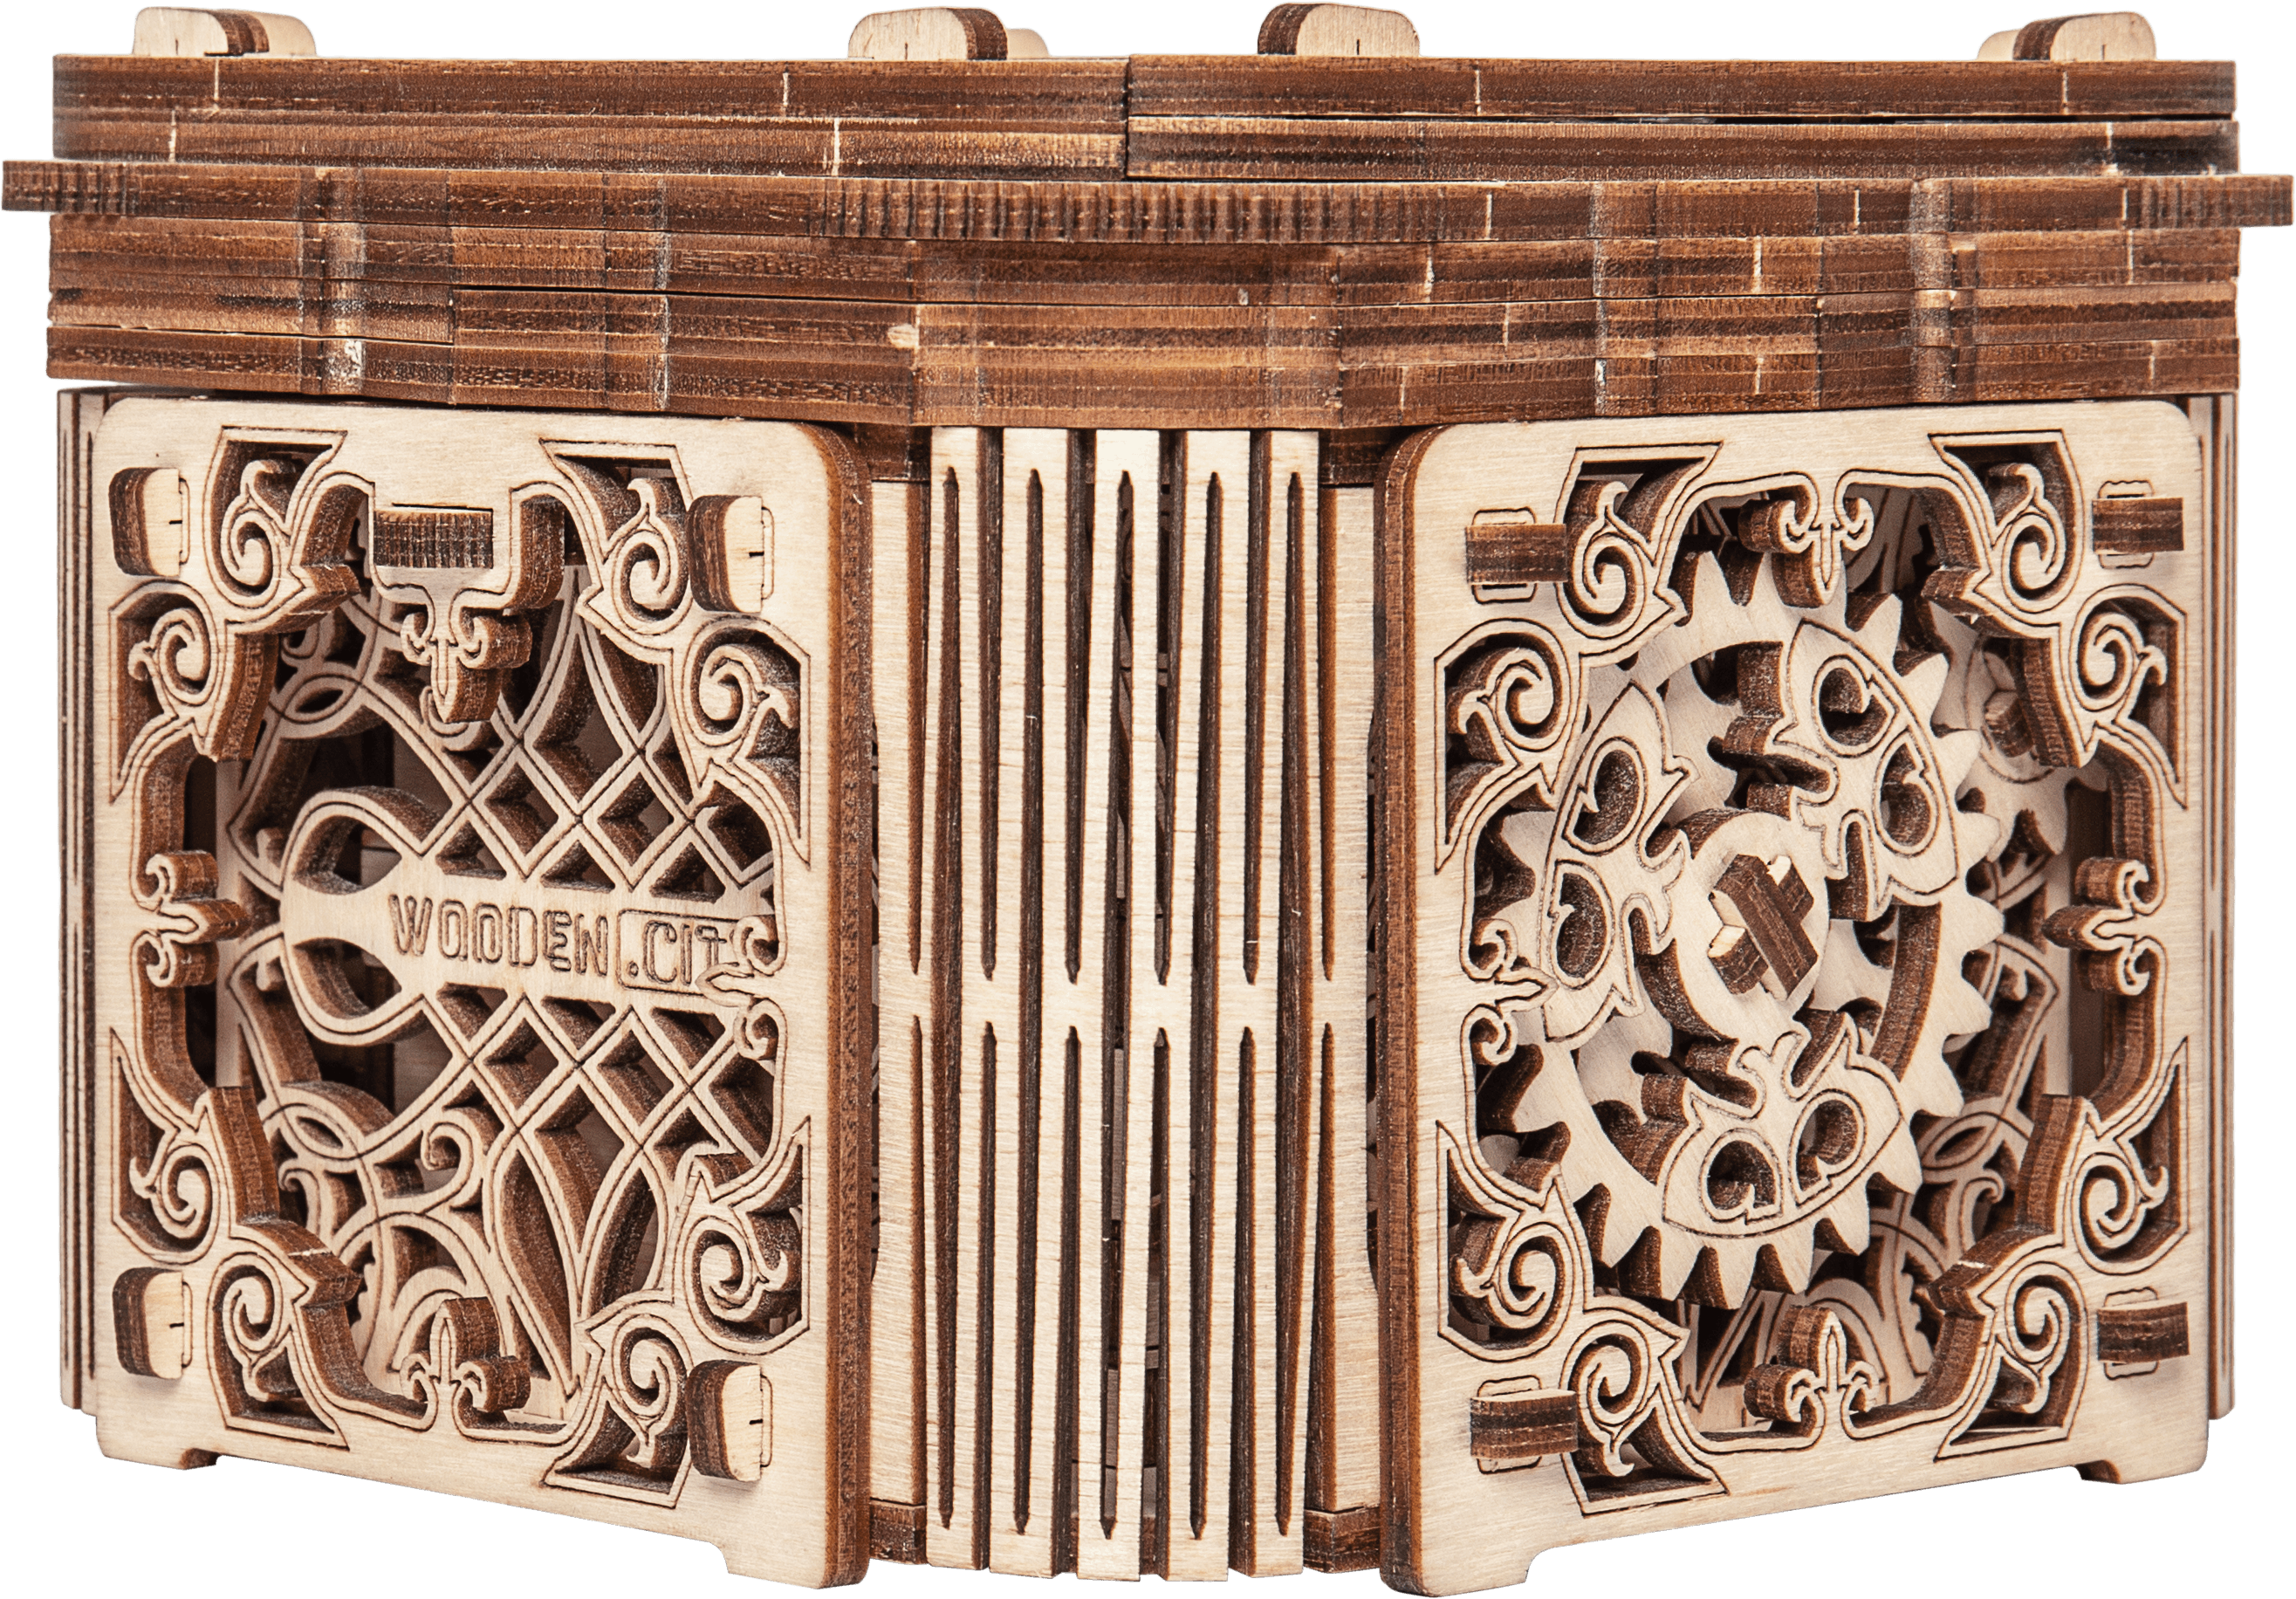 Wooden 3D Puzzle - Mysterious casket